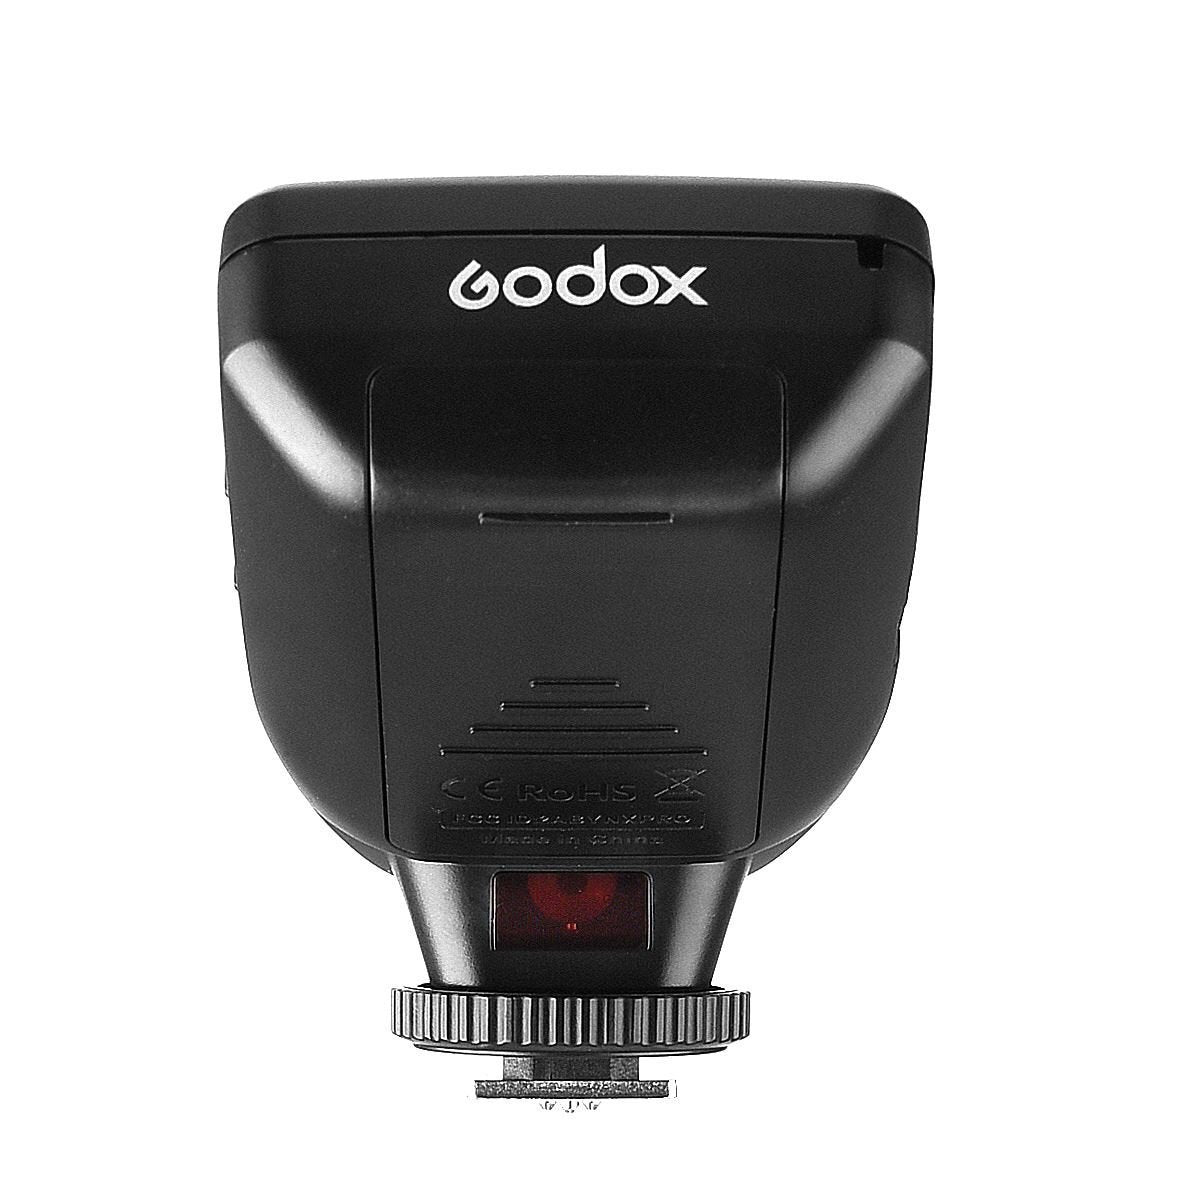 Godox XPRO-F 2.4G Wirless Flash Trigger Transmitter for Fujifilm